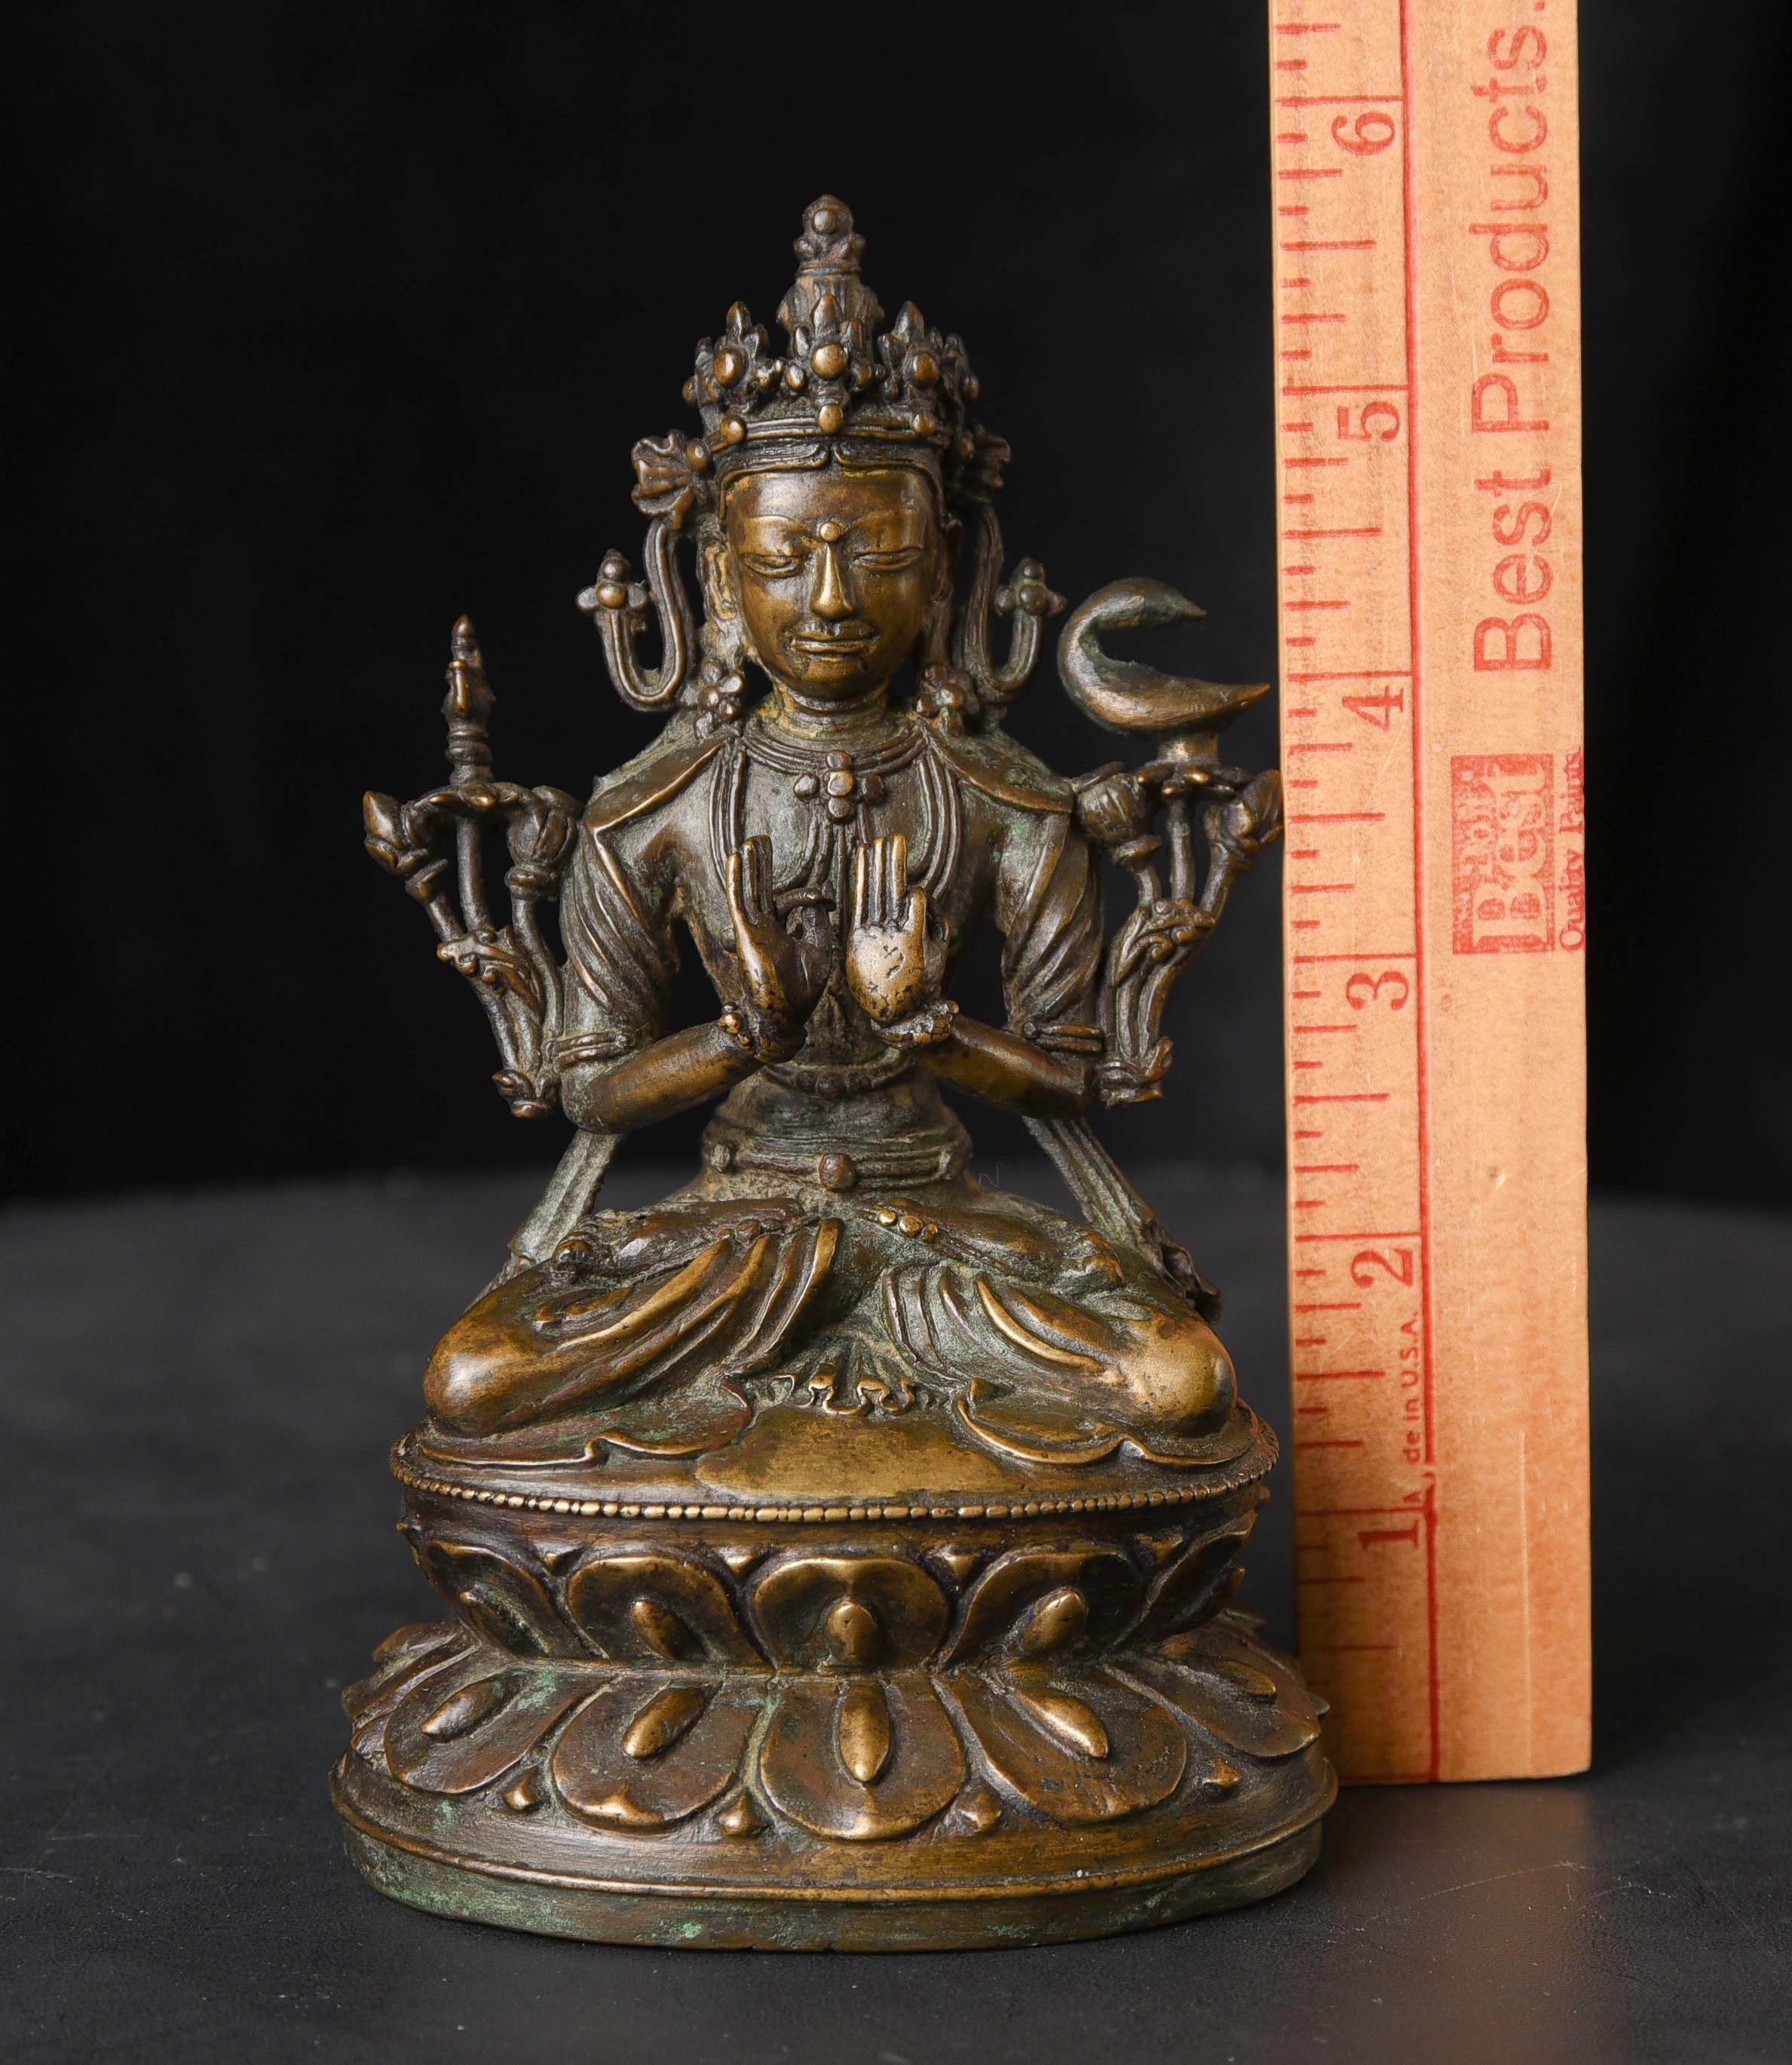 13/14. Jahrhundert Tibetischer Bronze-Buddha/Bodhisattva . Hervorragendes Exemplar - fein gegossen, wunderschön geschnitzt, mit einer schönen, unberührten, unverschuldeten Patina Bemerkenswert ist die Art und Weise, wie sie eine starke spirituelle